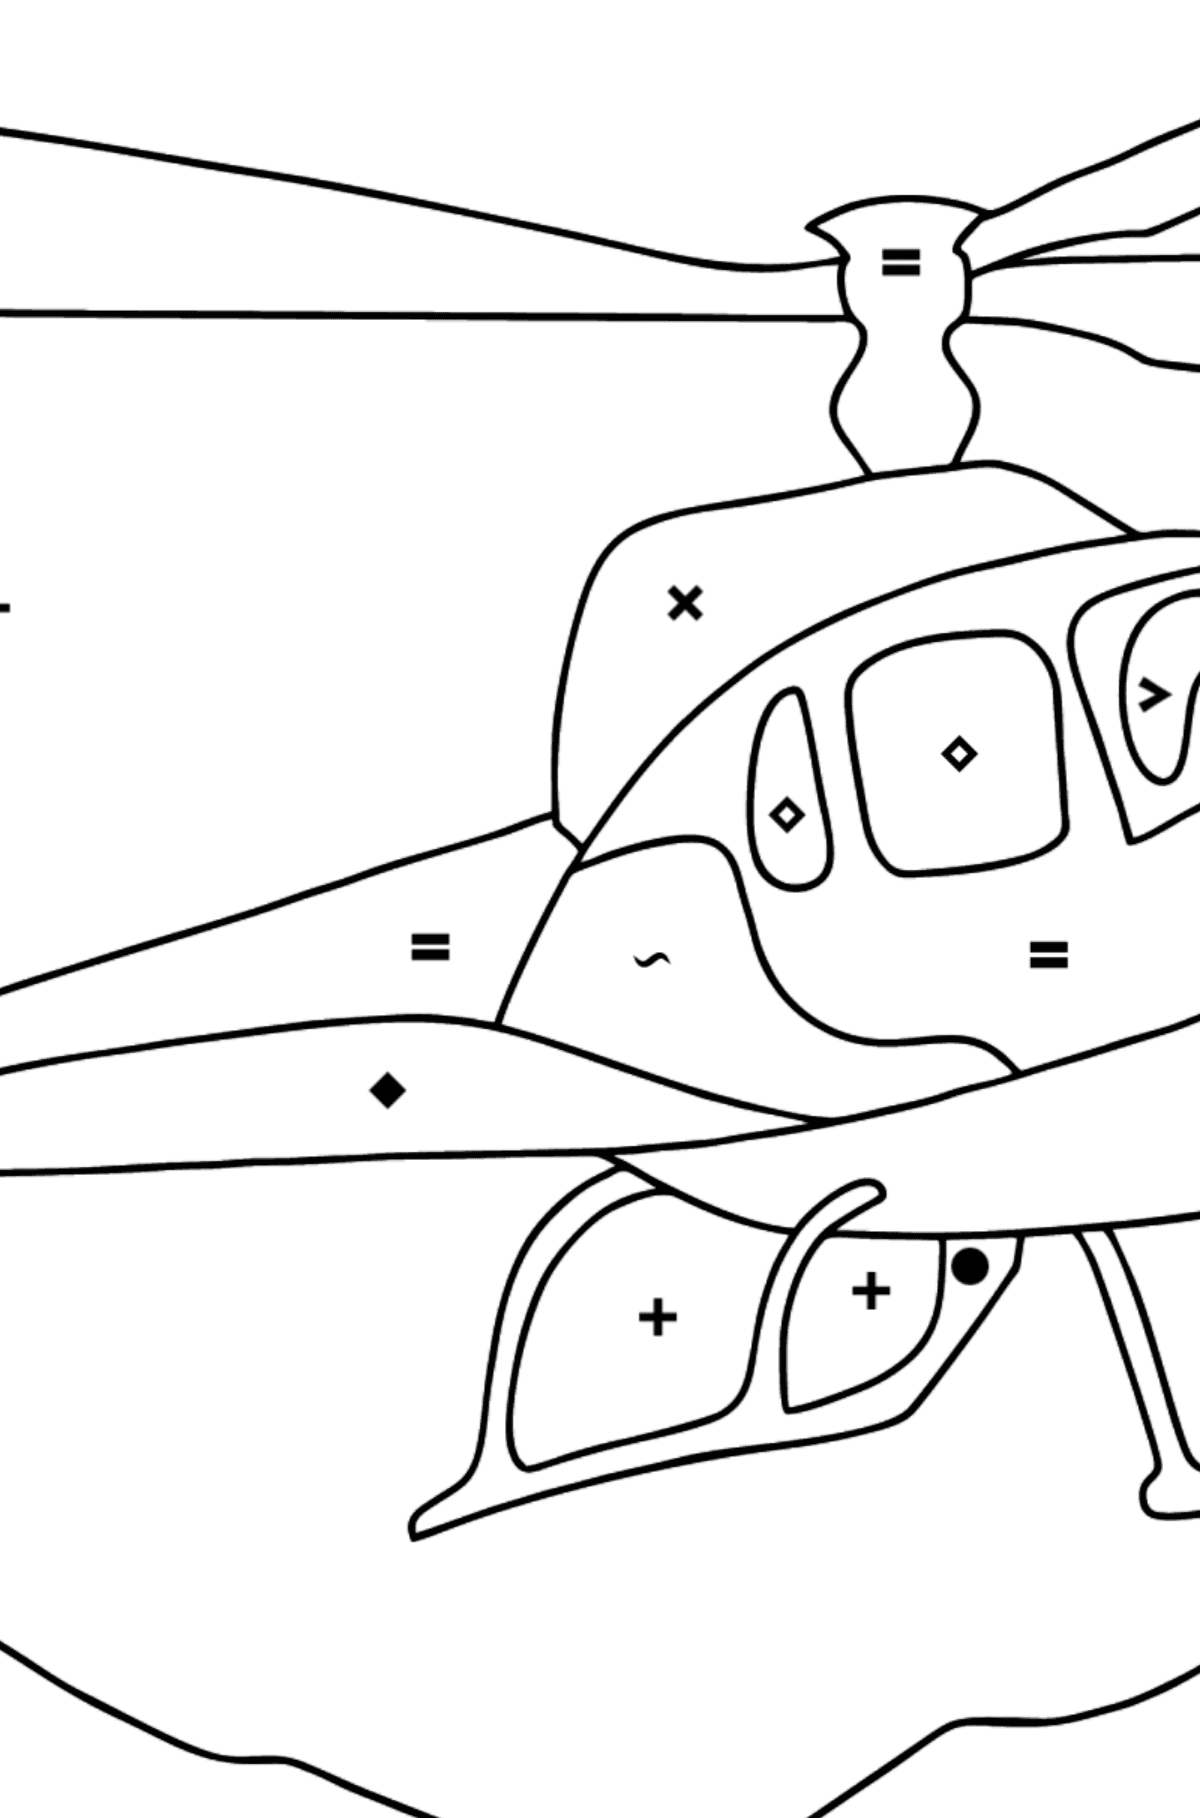 Dibujo para Colorear - Un Helicóptero de Ciudad - Colorear por Símbolos para Niños